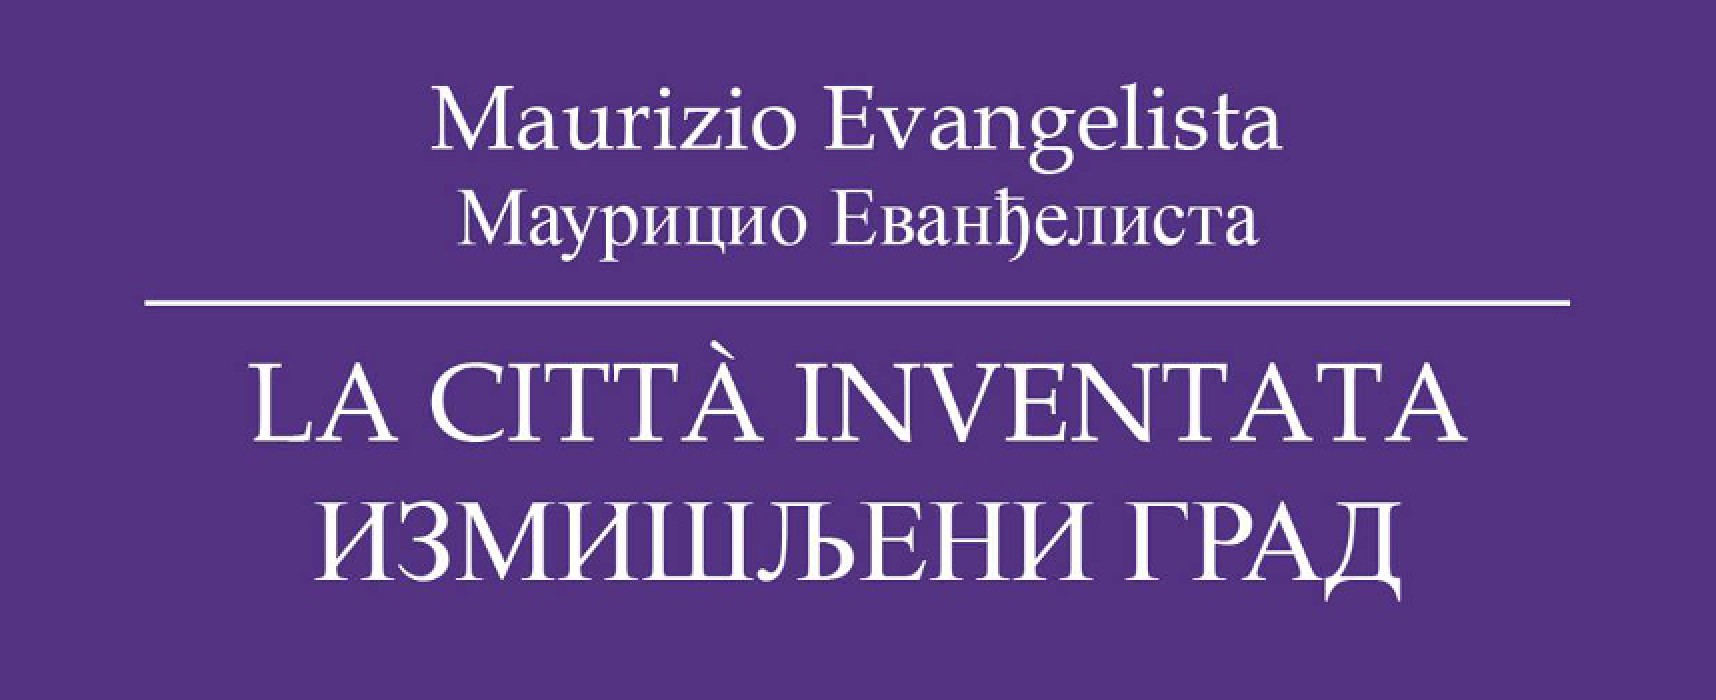 “La città inventata”, presentazione del libro di Maurizio Evangelista al Palazzo Tupputi